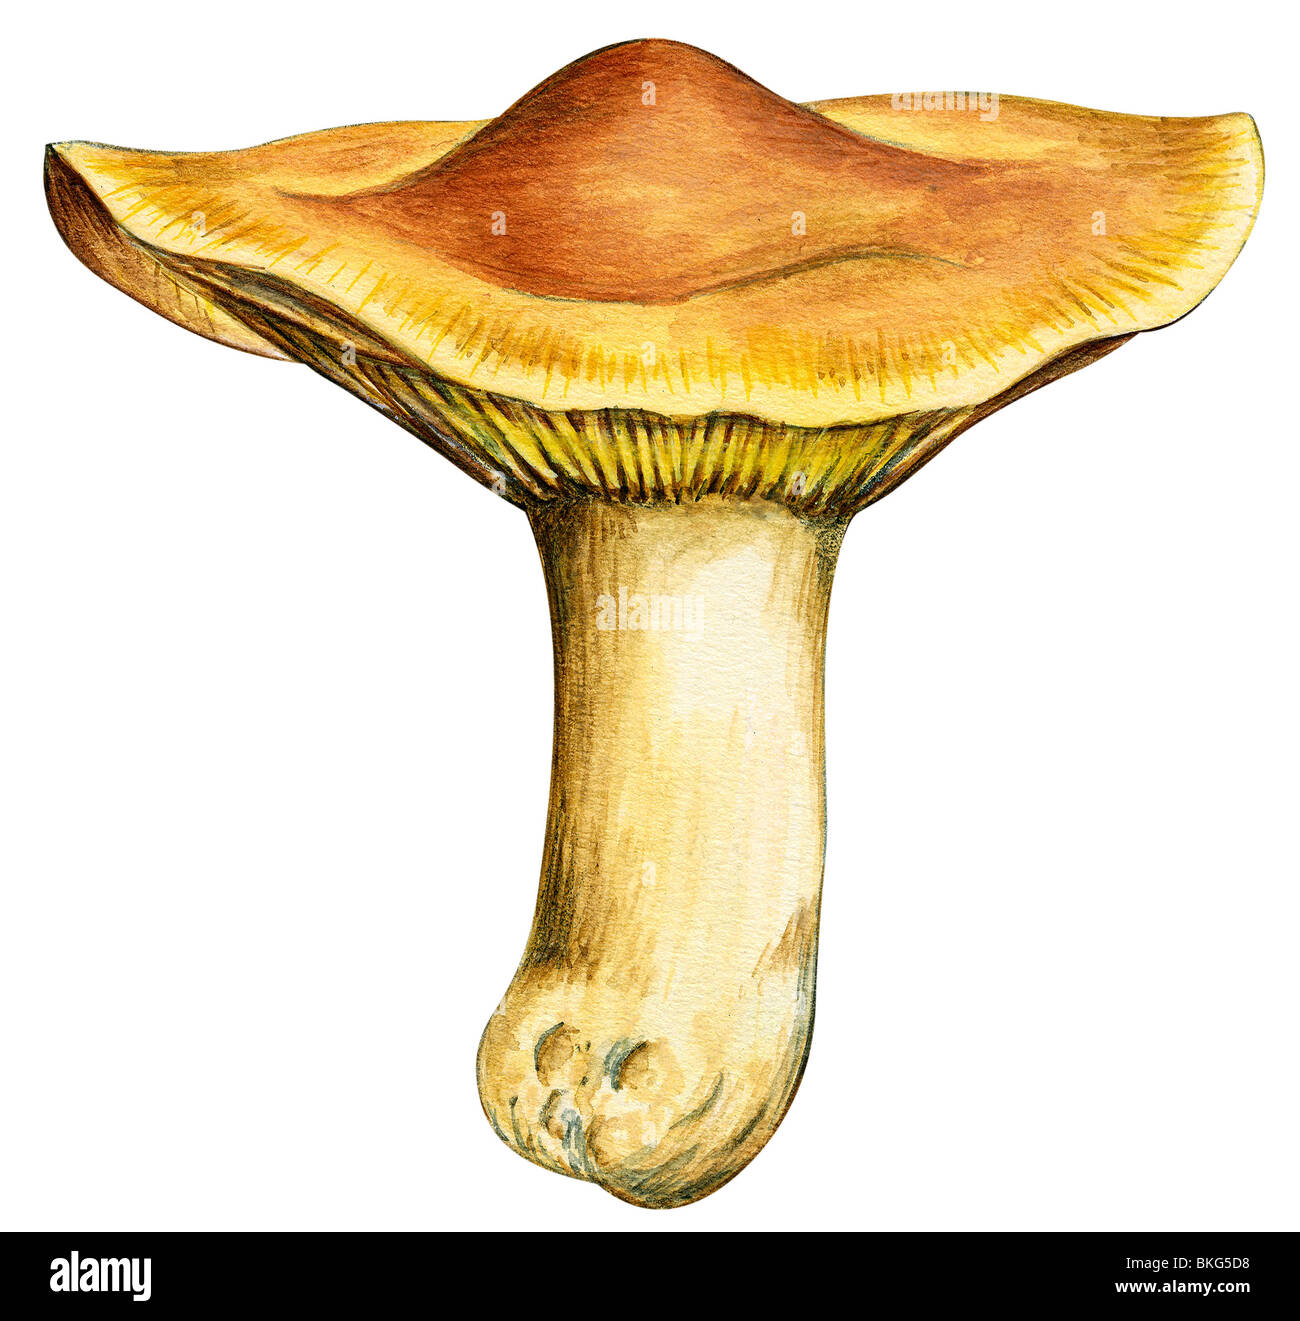 Canary mushroom Stock Photo